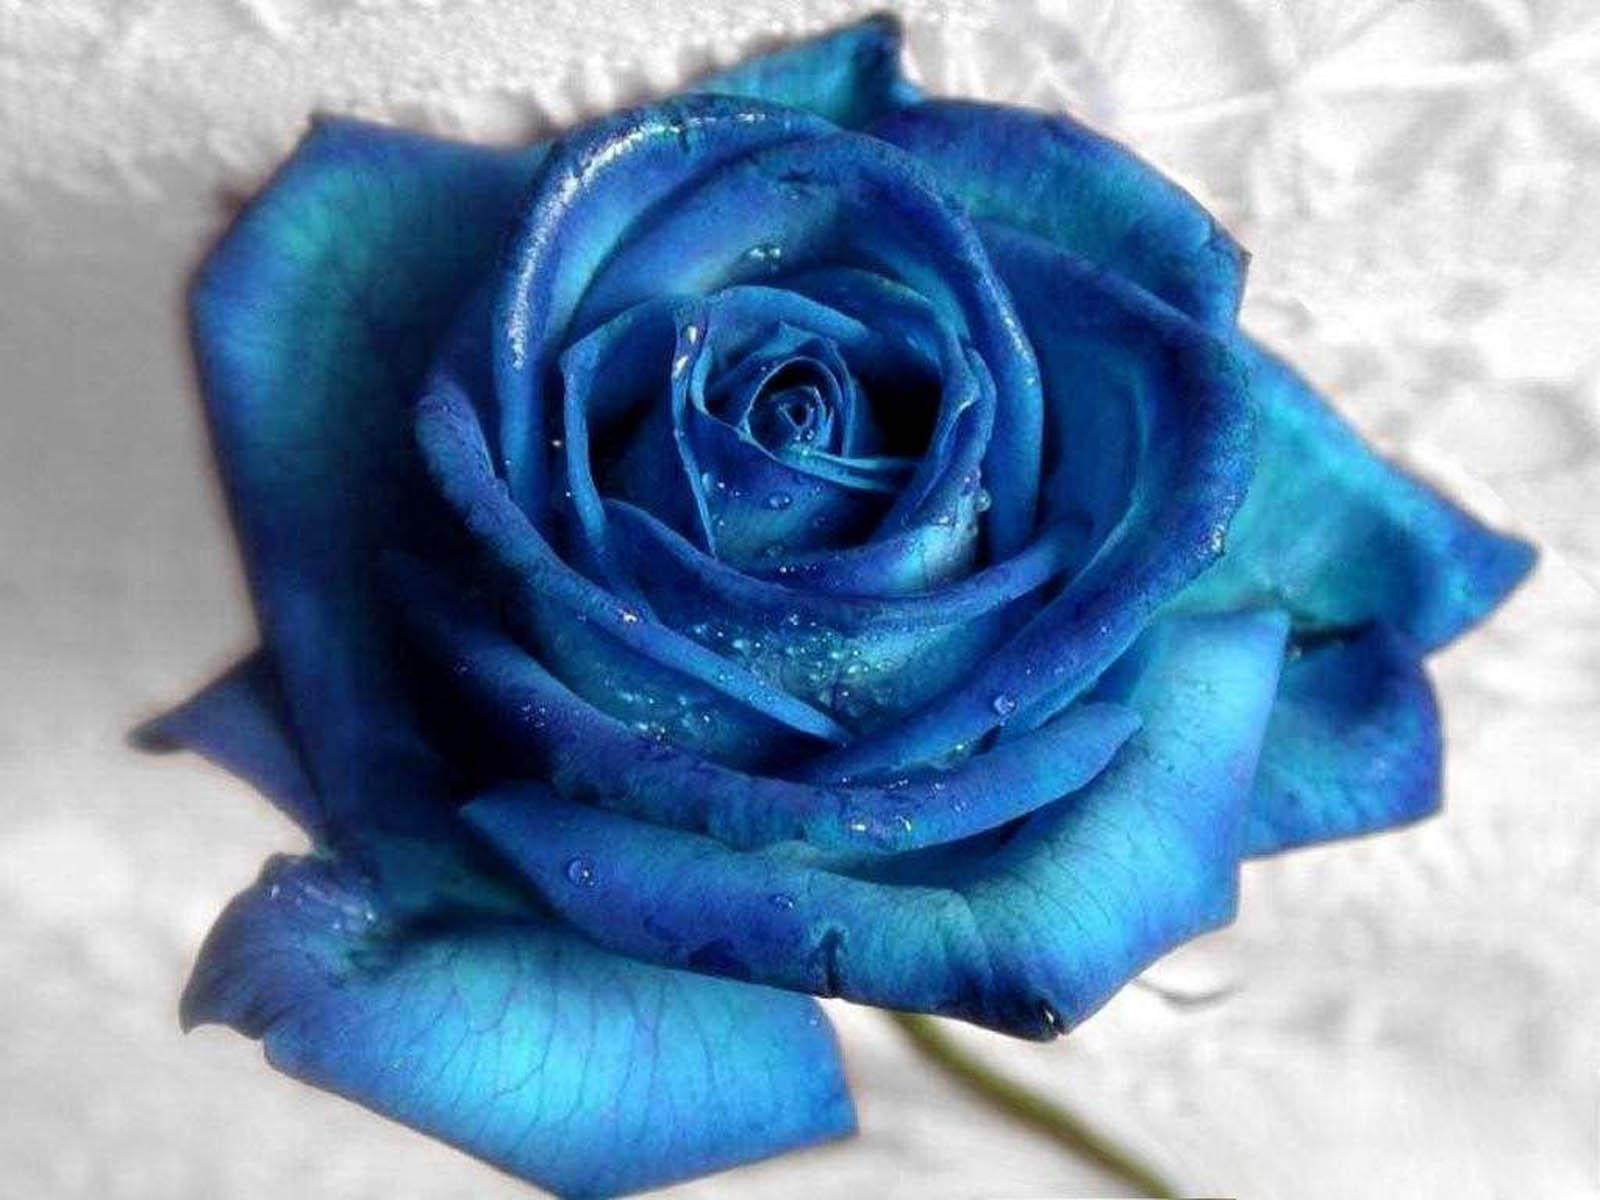 earth, rose, blue flower, blue rose, flower